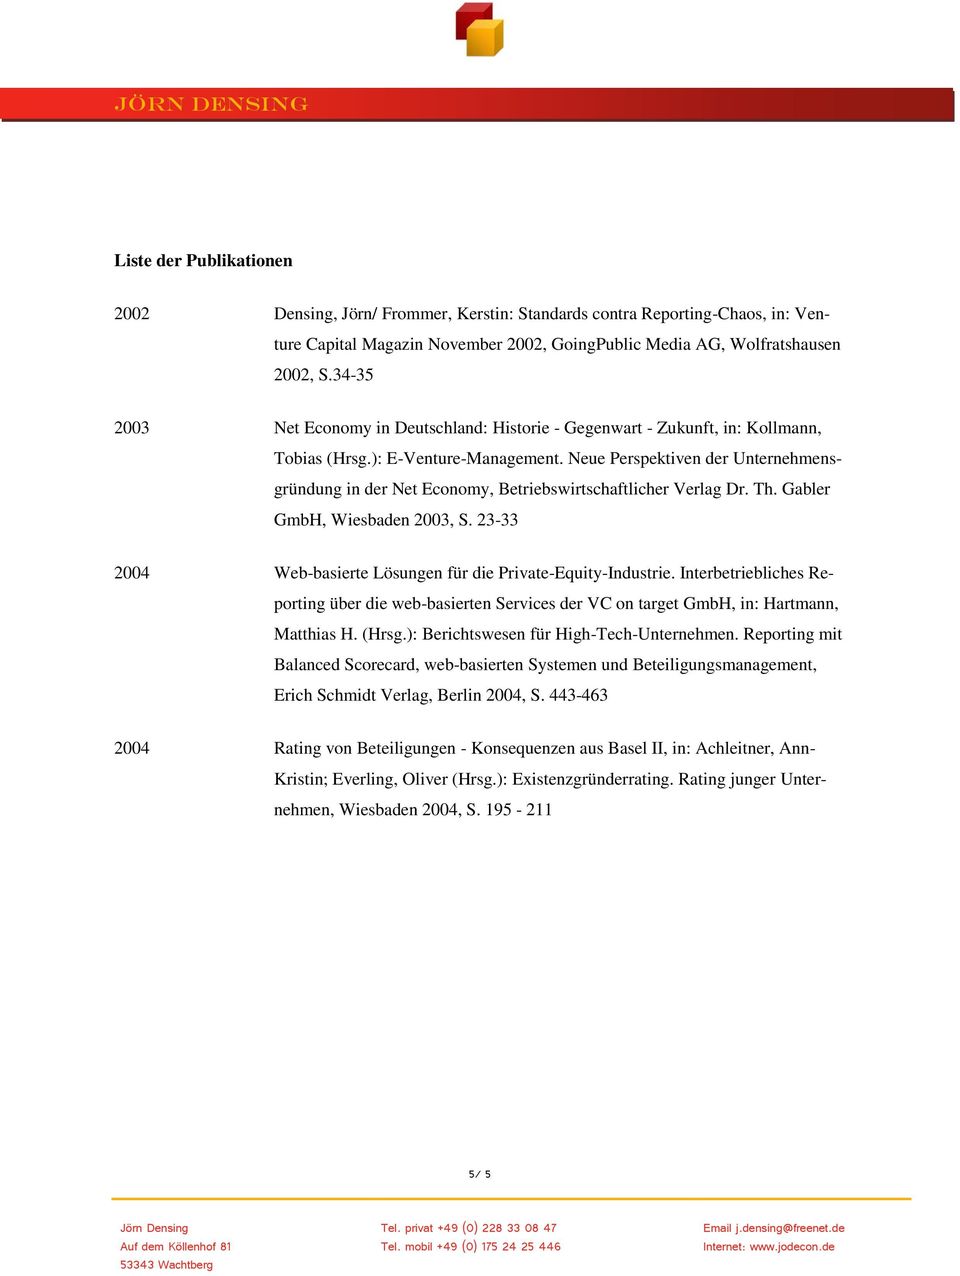 Neue Perspektiven der Unternehmensgründung in der Net Economy, Betriebswirtschaftlicher Verlag Dr. Th. Gabler GmbH, Wiesbaden 2003, S.